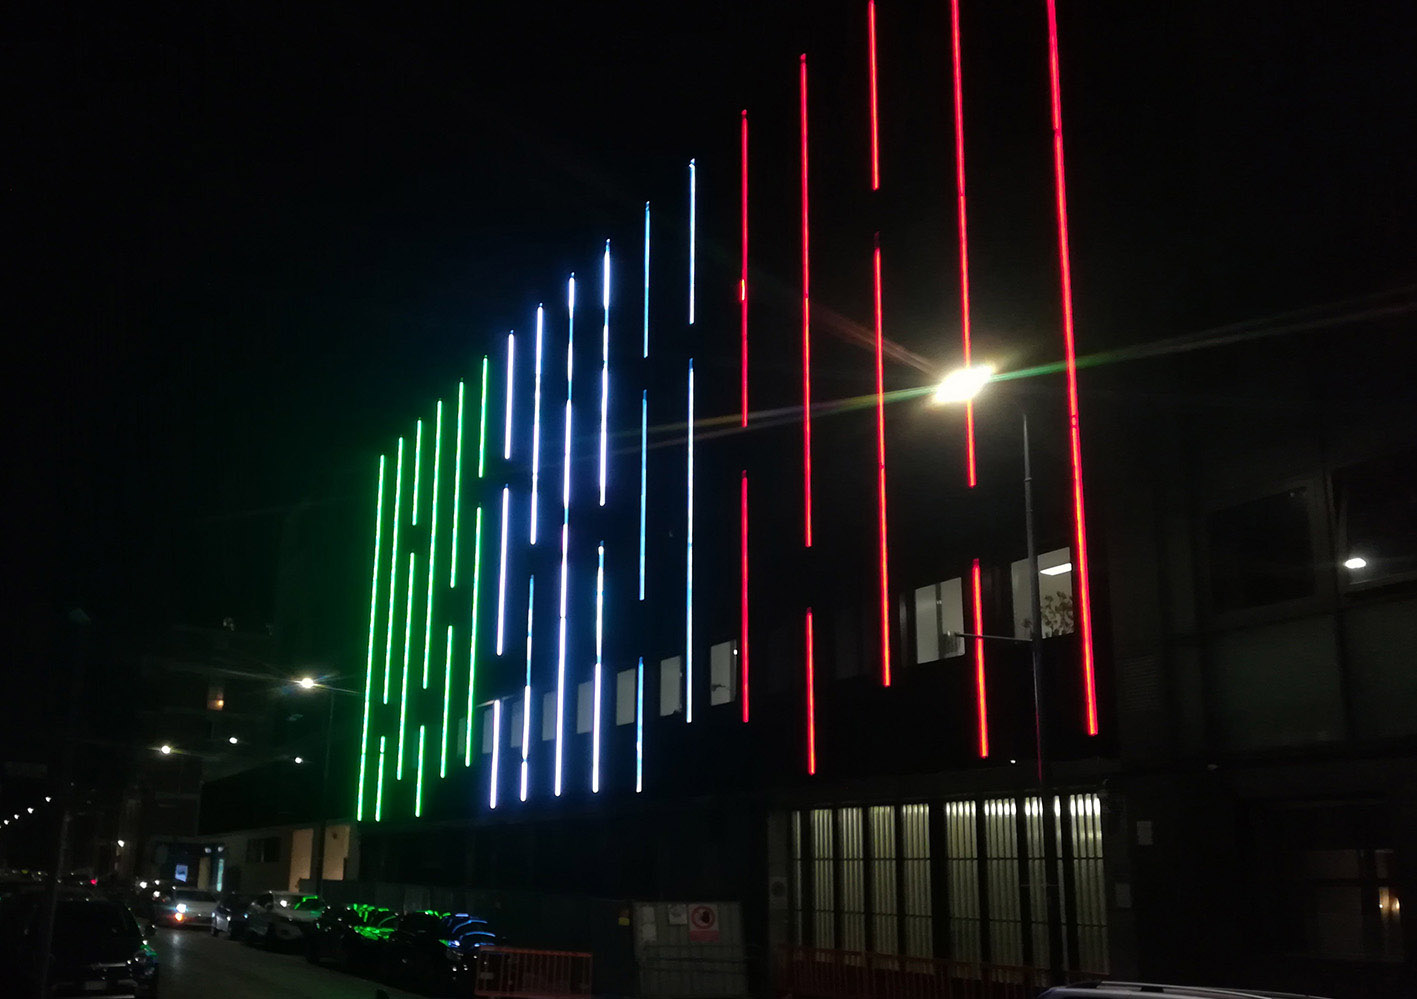 Progetto - Lega Calcio - Milano - Illuminazione notturna della facciata